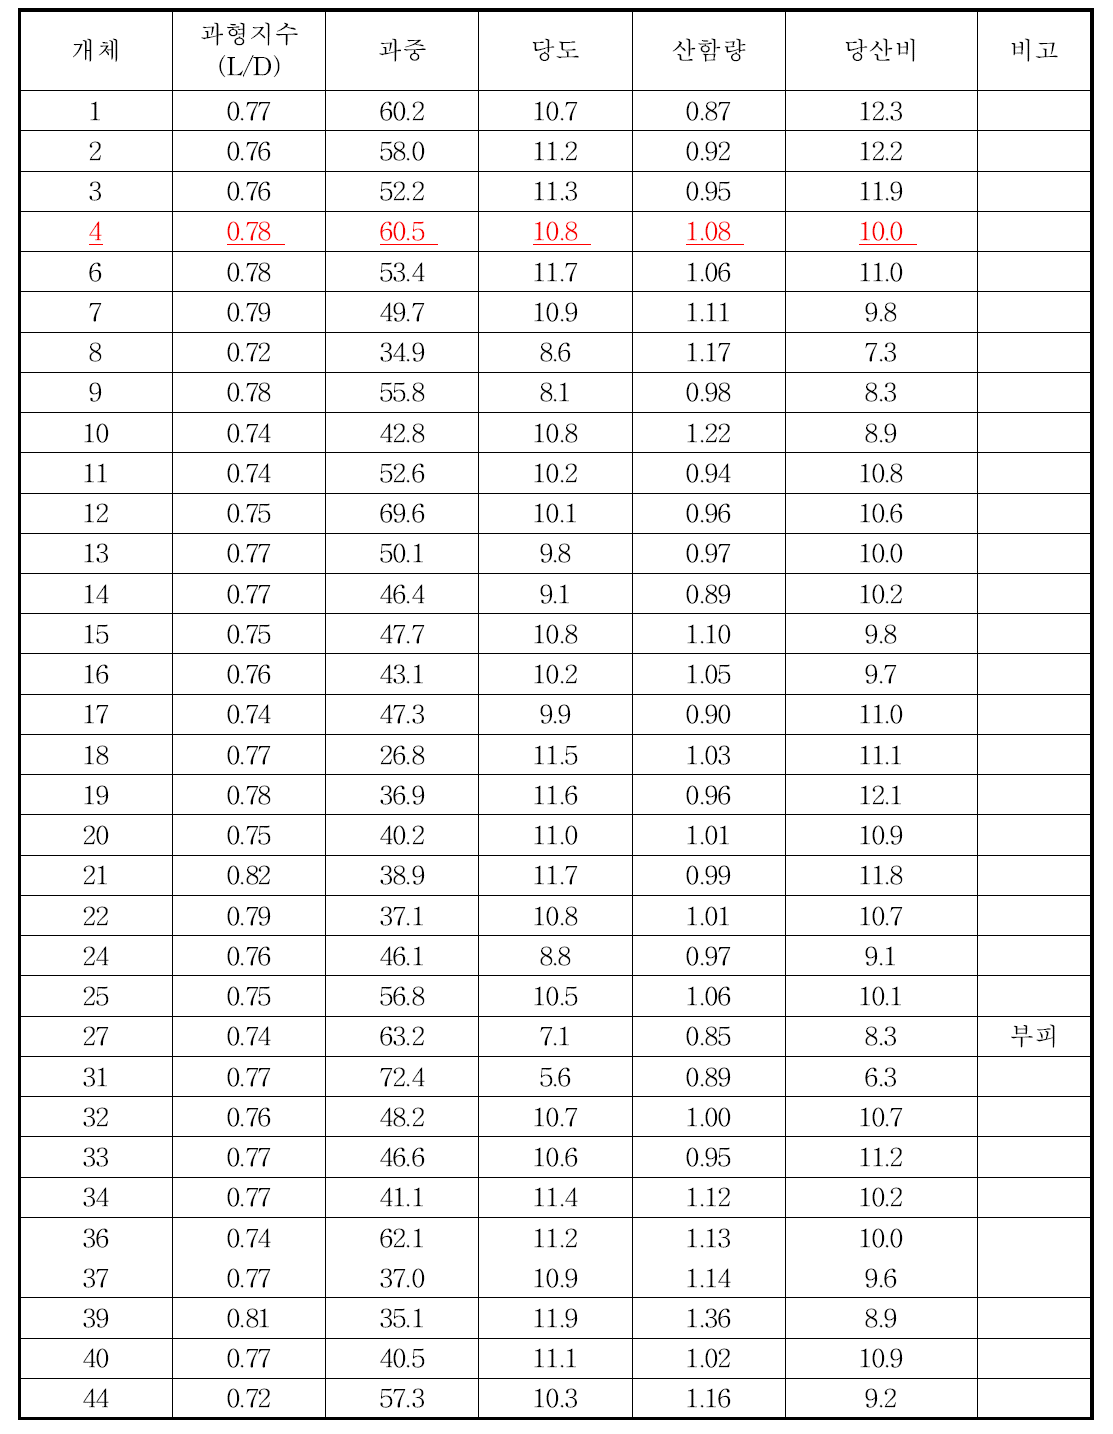 암기조생 × 썬버스트 교배 조합 착과 과실 조사 (조사일: 2014. 10. 14.)